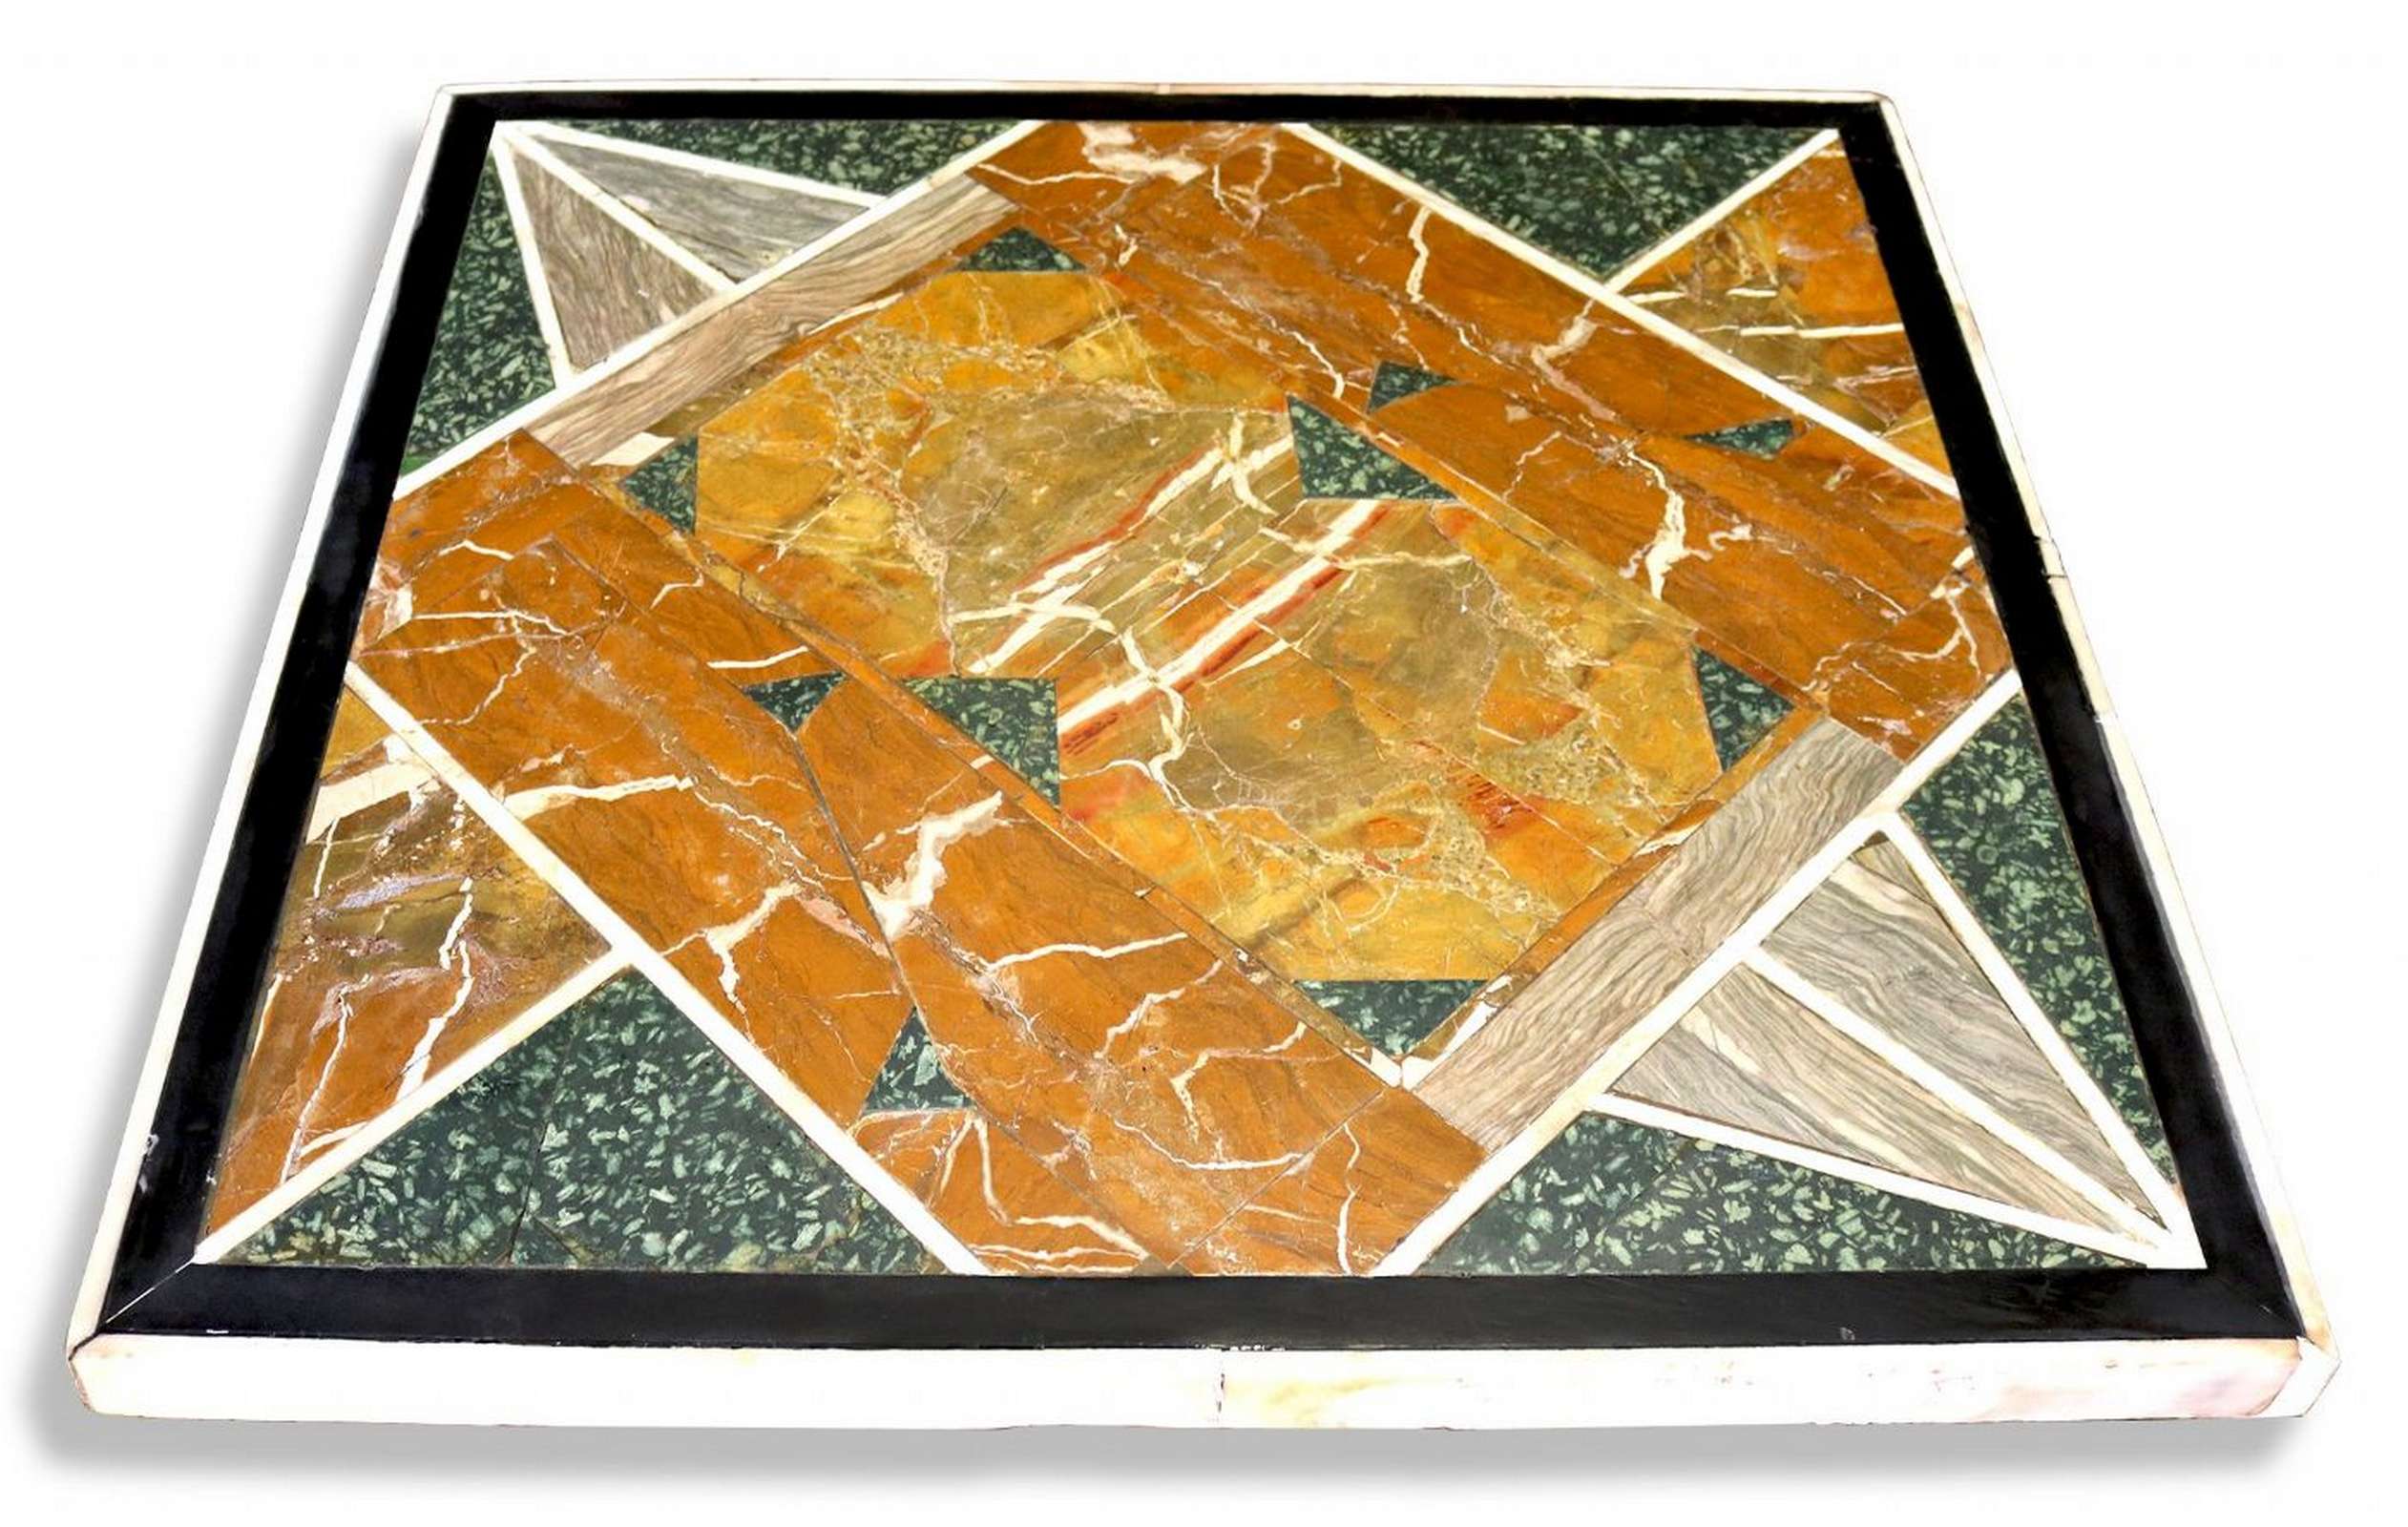 Piano intarsiato in marmi rari. Epoca 1900 - Tavoli in vari materiali - Tavoli e complementi - Prodotti - Antichità Fiorillo